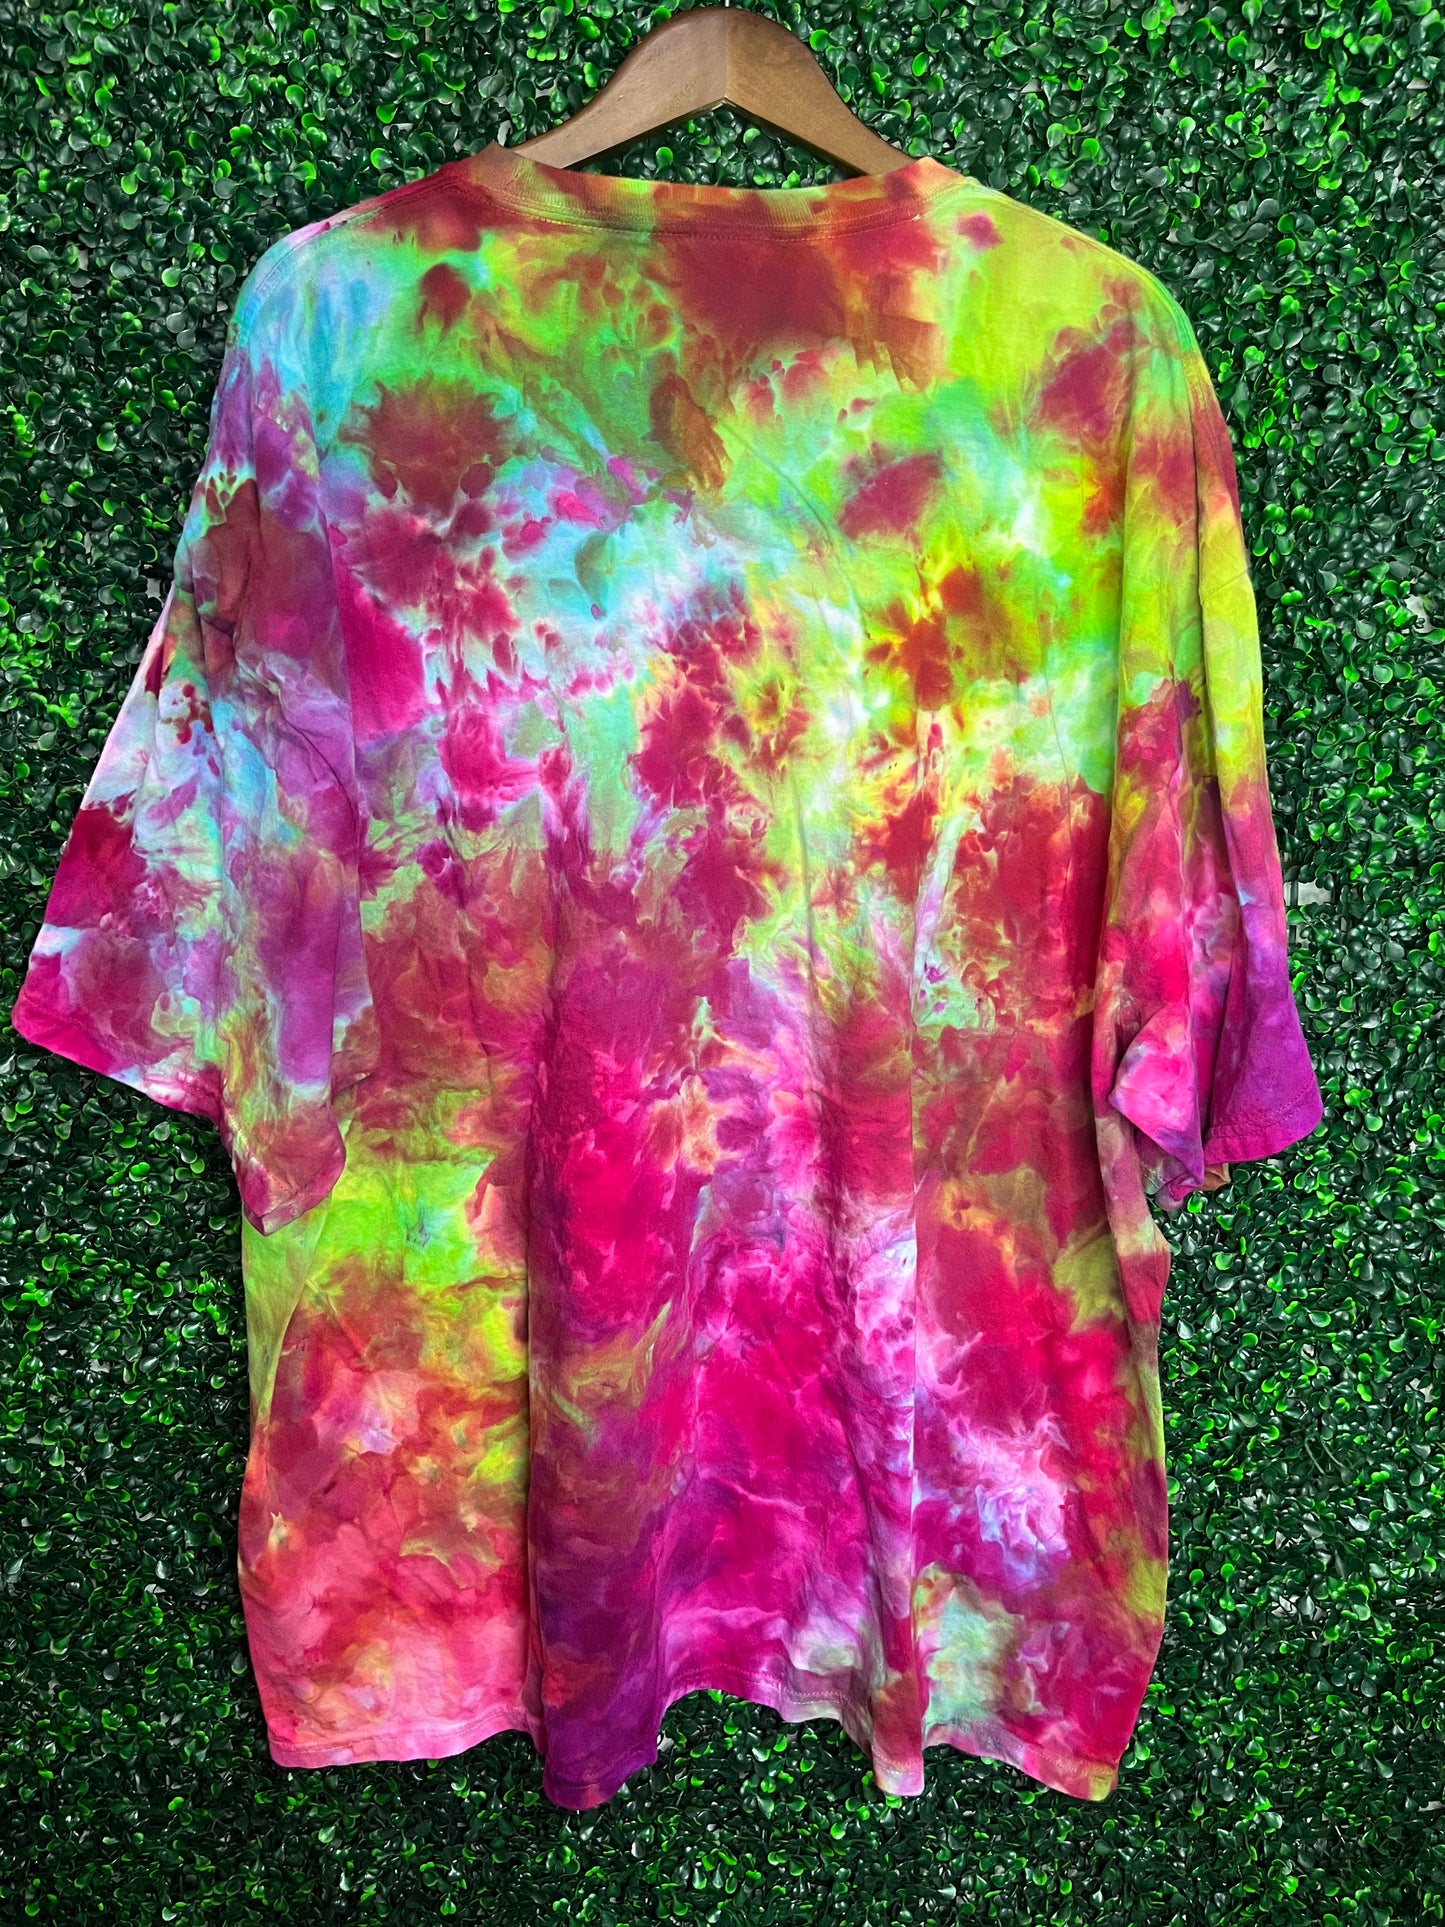 Size 4XL Comfort Colors acid rainbow scrunch tie dye